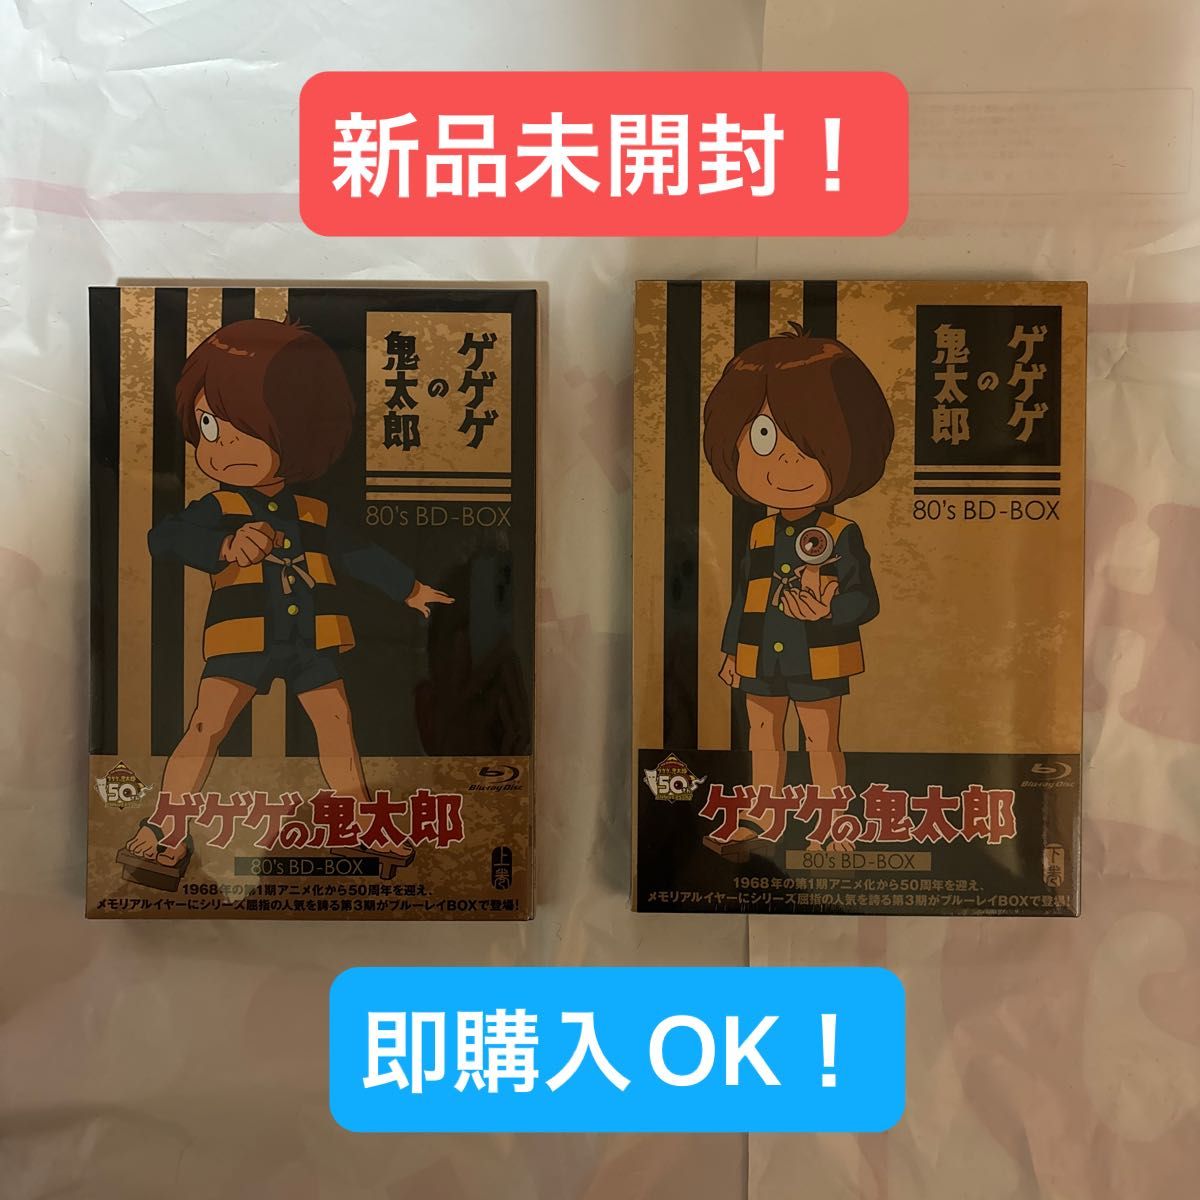 【新品未開封】 ゲゲゲの鬼太郎 80 's BD-BOX 全2巻セット ブルーレイ 水木しげる